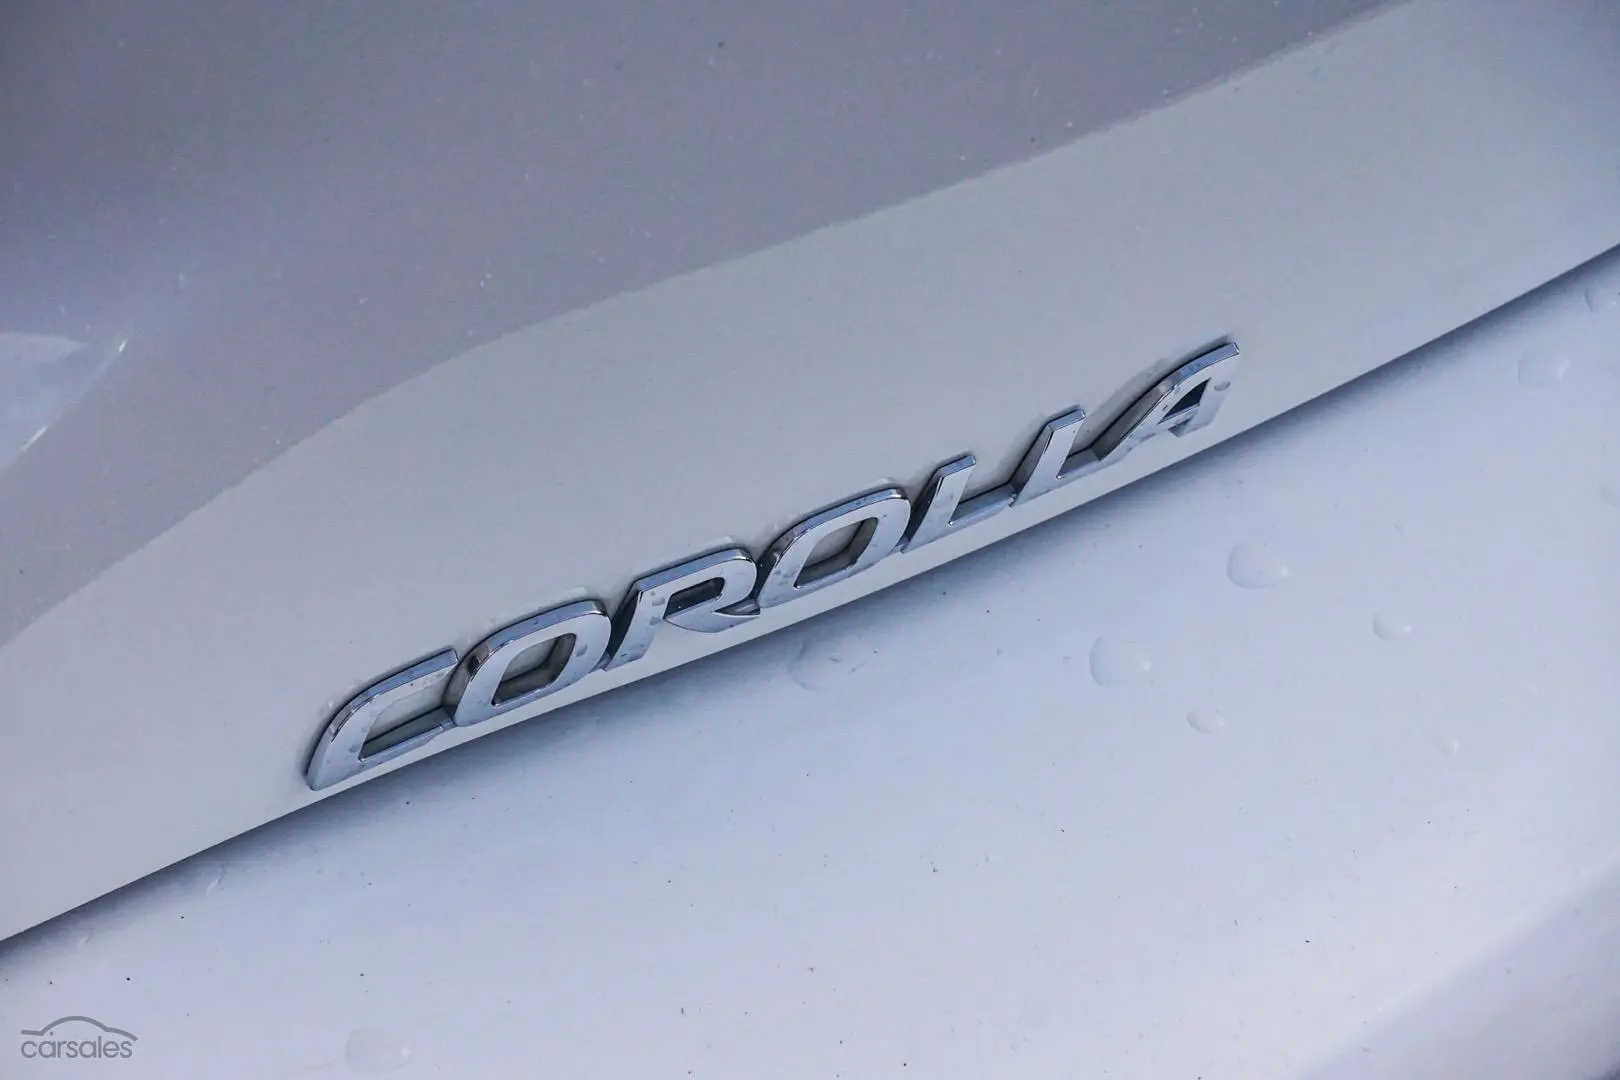 2021 Toyota Corolla Image 15